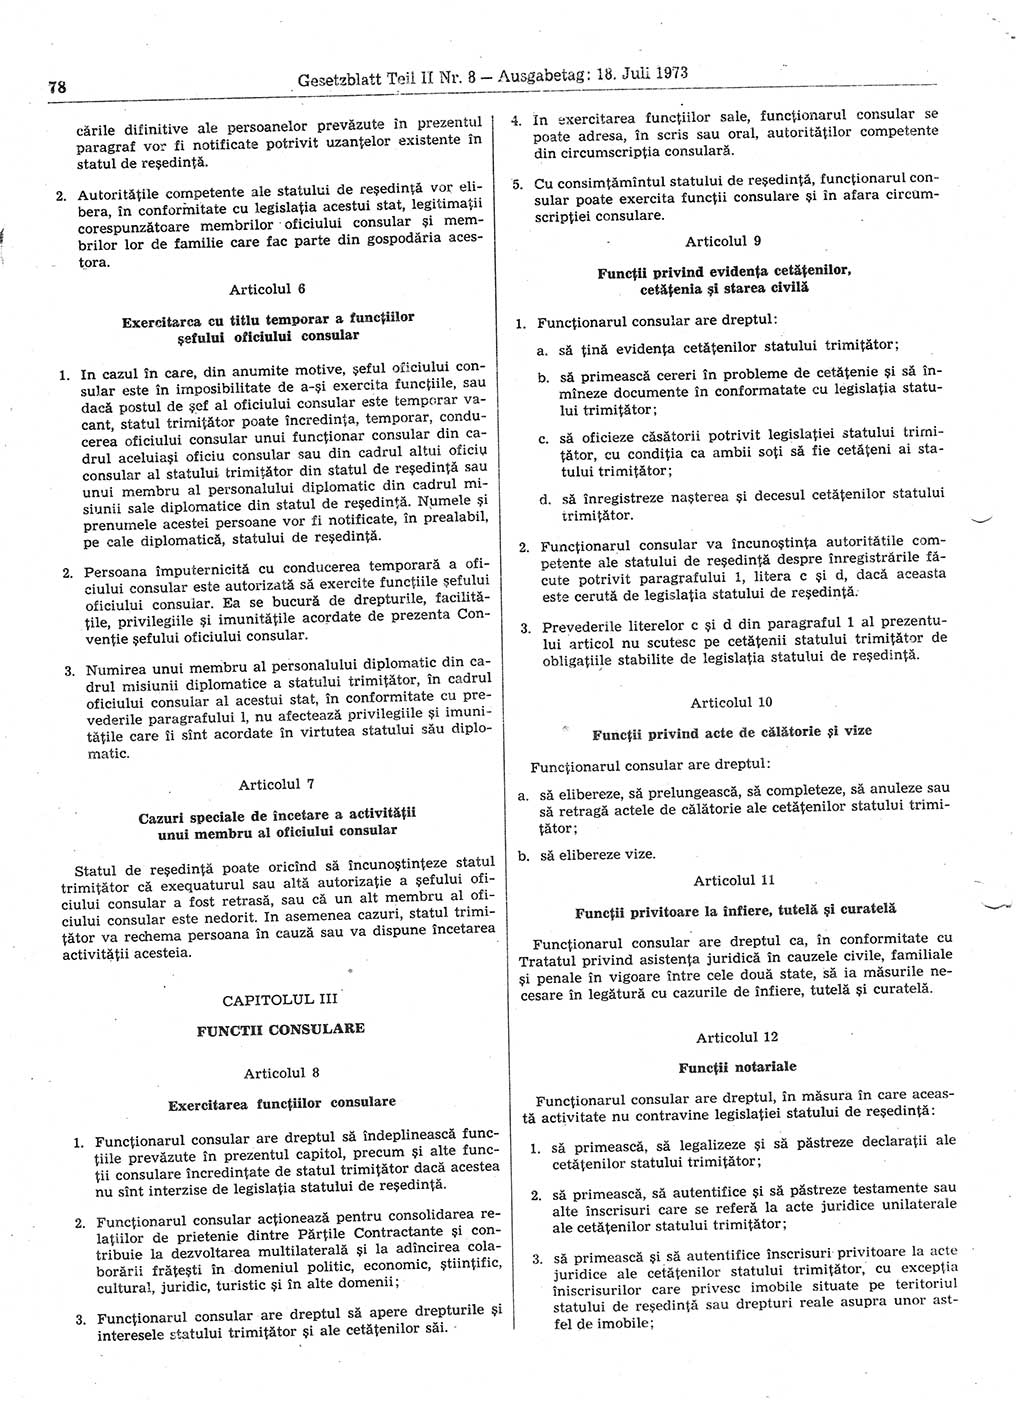 Gesetzblatt (GBl.) der Deutschen Demokratischen Republik (DDR) Teil ⅠⅠ 1973, Seite 78 (GBl. DDR ⅠⅠ 1973, S. 78)